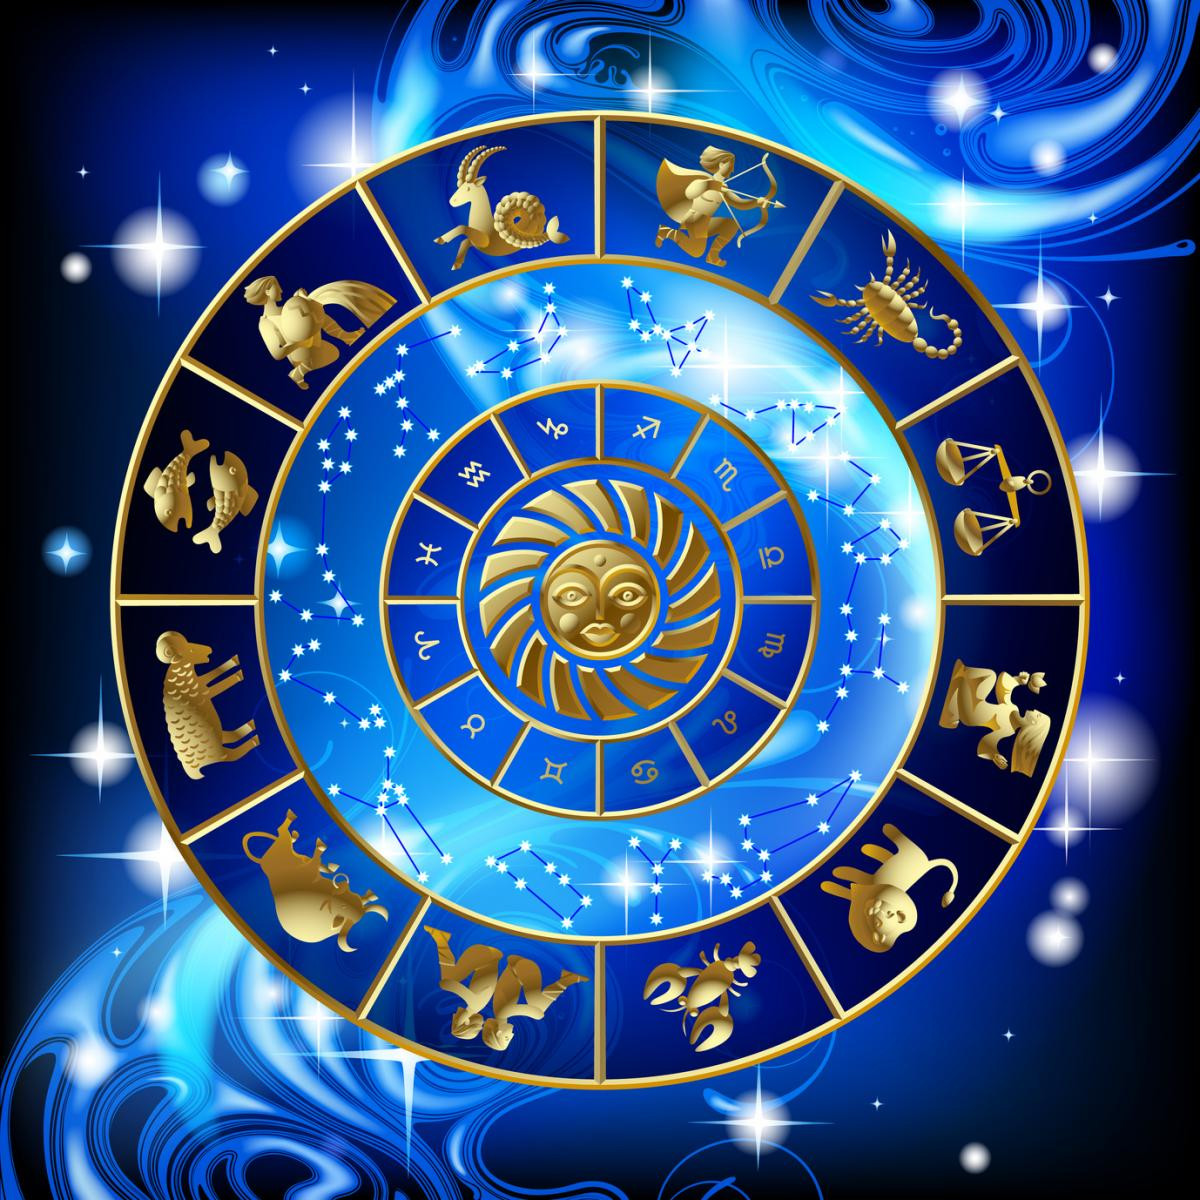 Devine le signe astrologique des stars